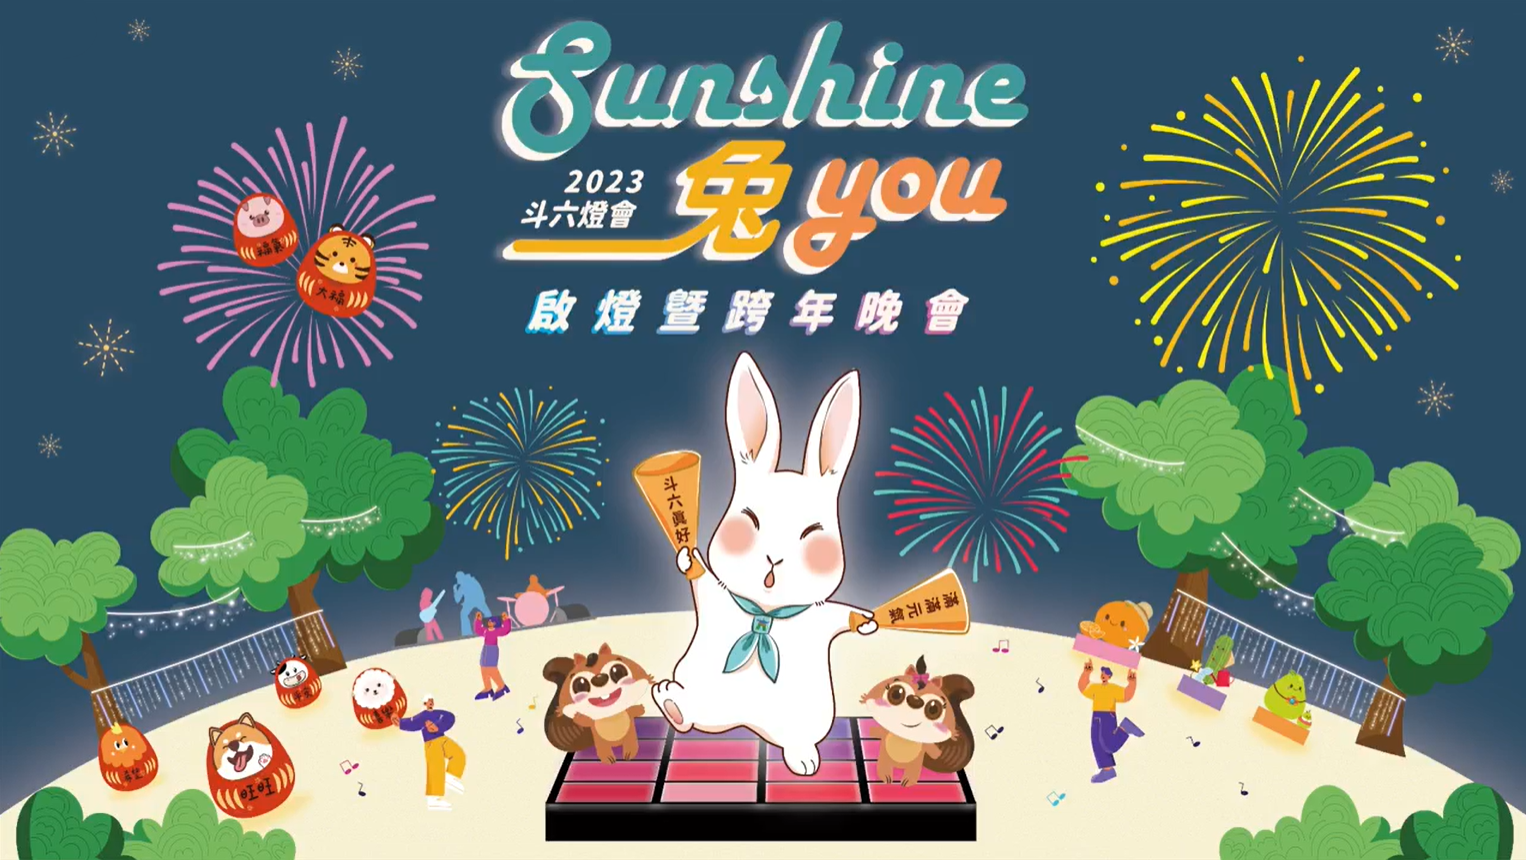 2023 斗六燈會🏮 Sunshine 兔 you 🧨